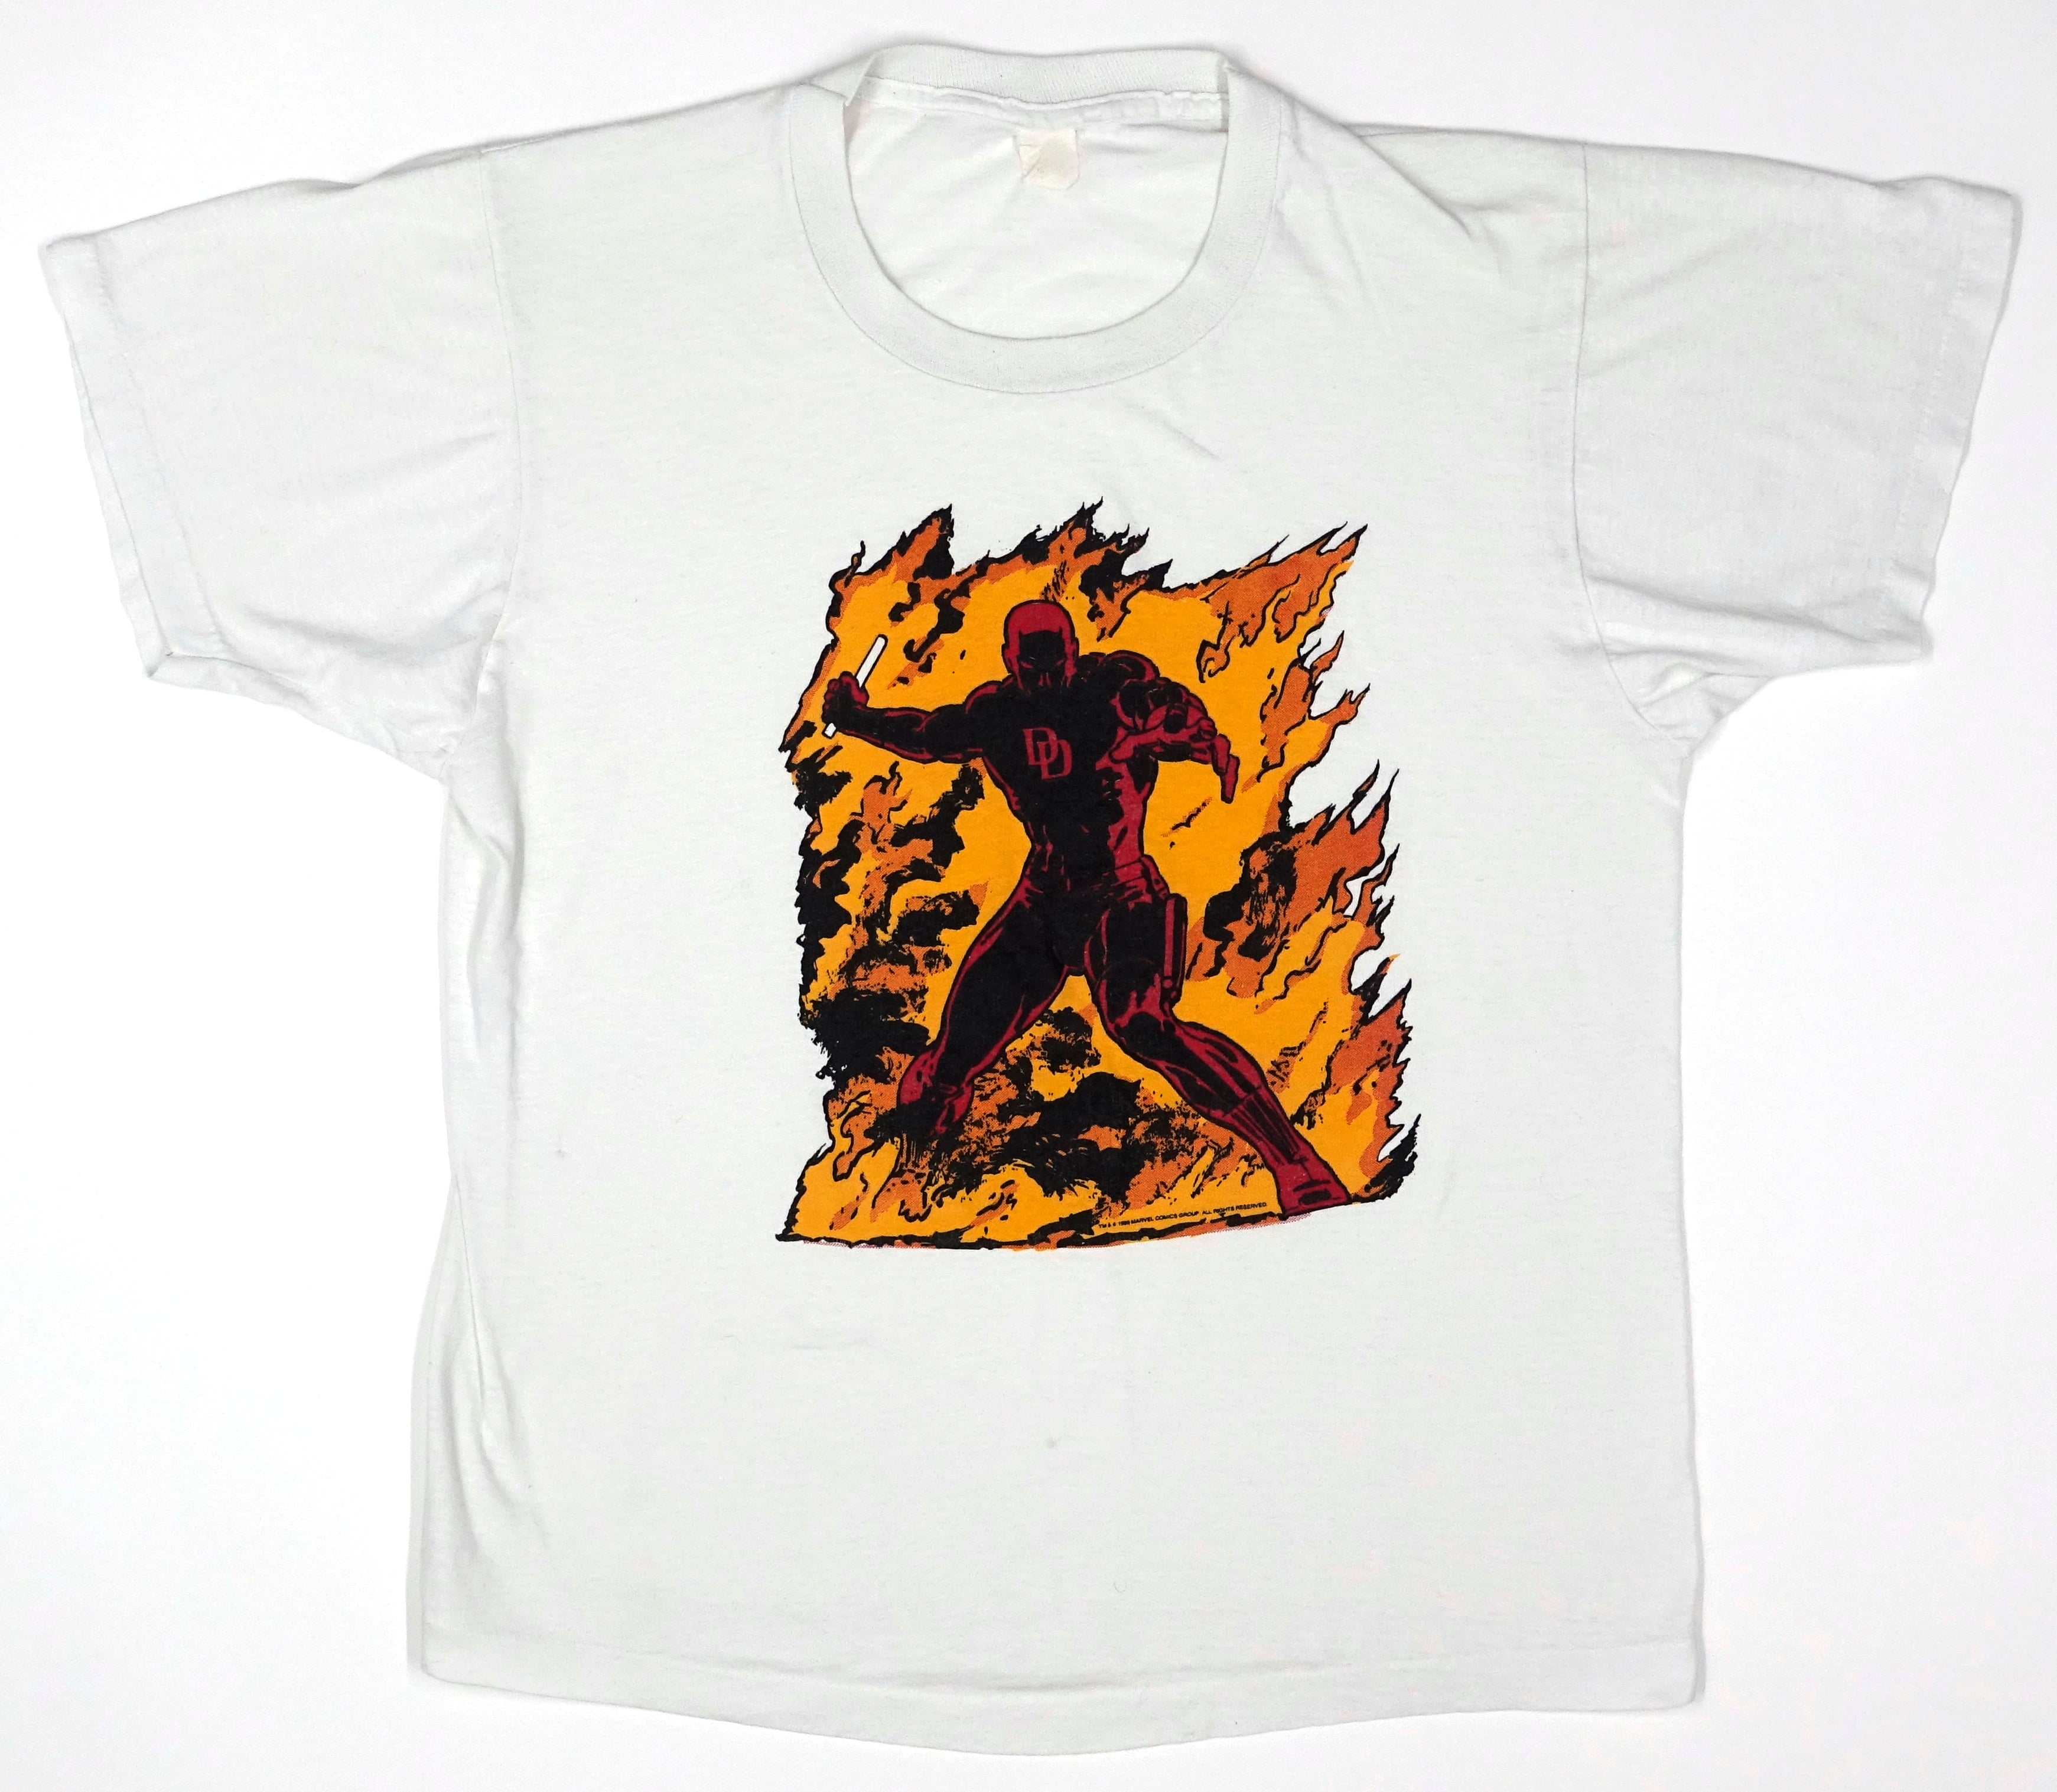 Marvel – Daredevil 1986 Shirt Size Large